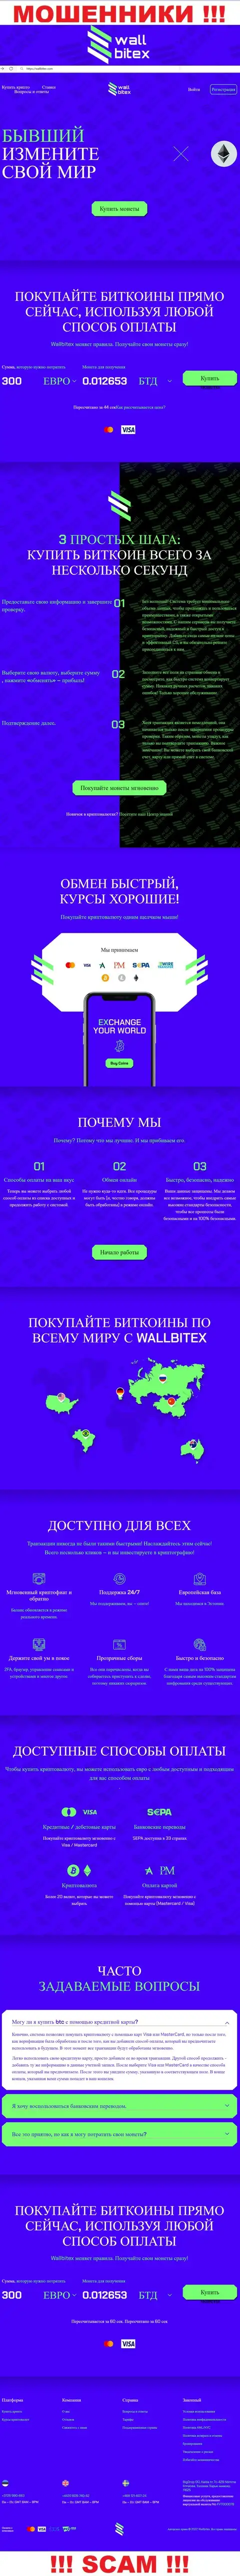 WallBitex Com - это официальный web-портал противозаконно действующей конторы WallBitex